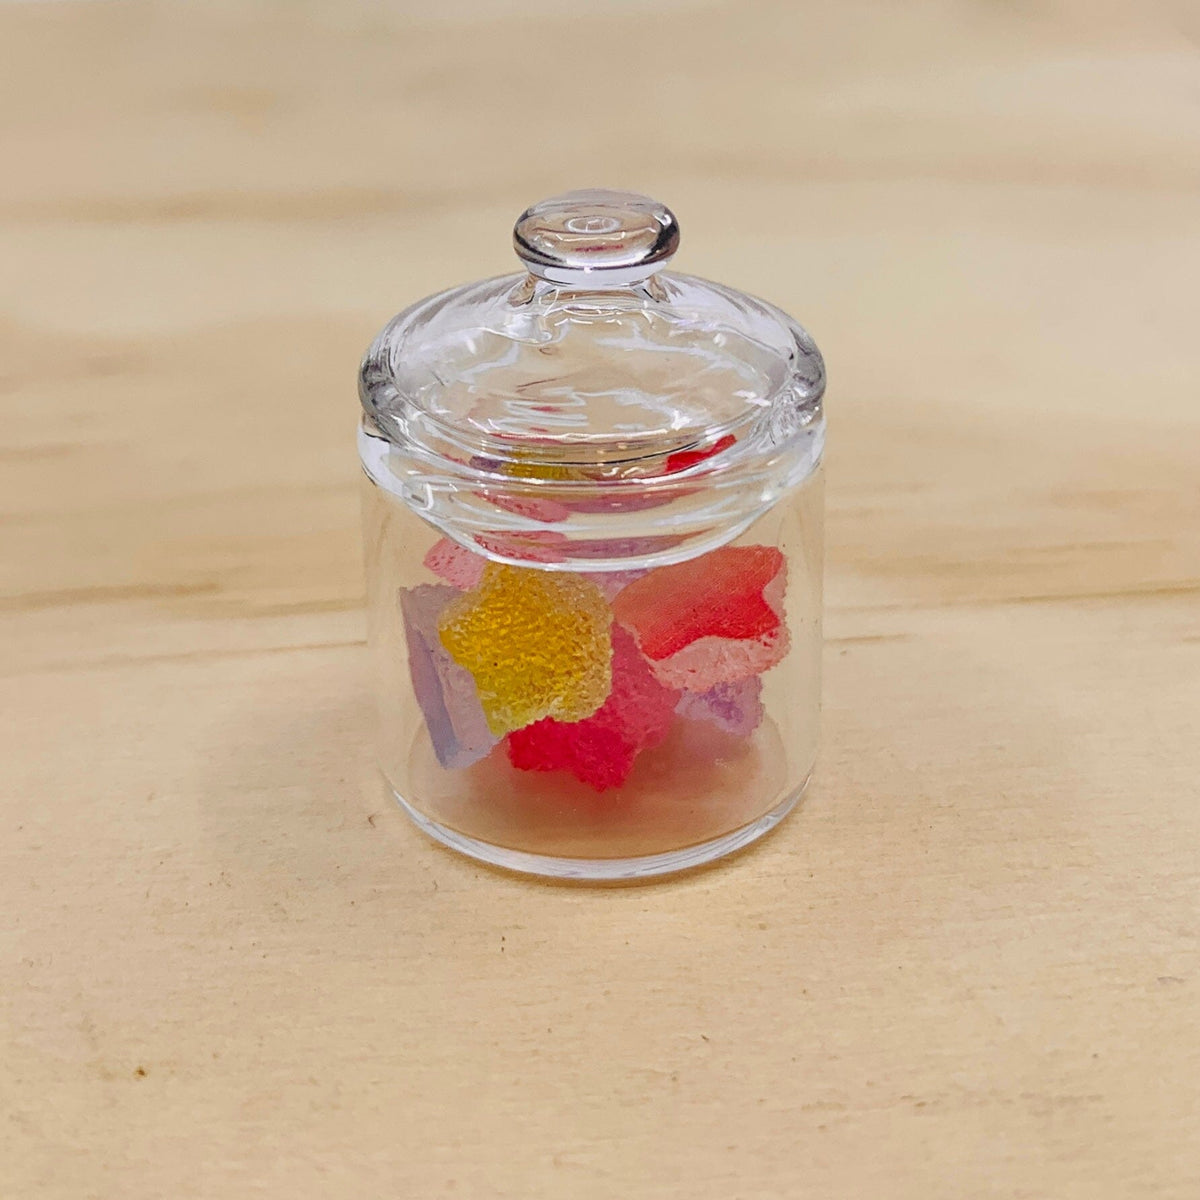 Tiniest Jar of Gumdrops, Stars Miniature - 